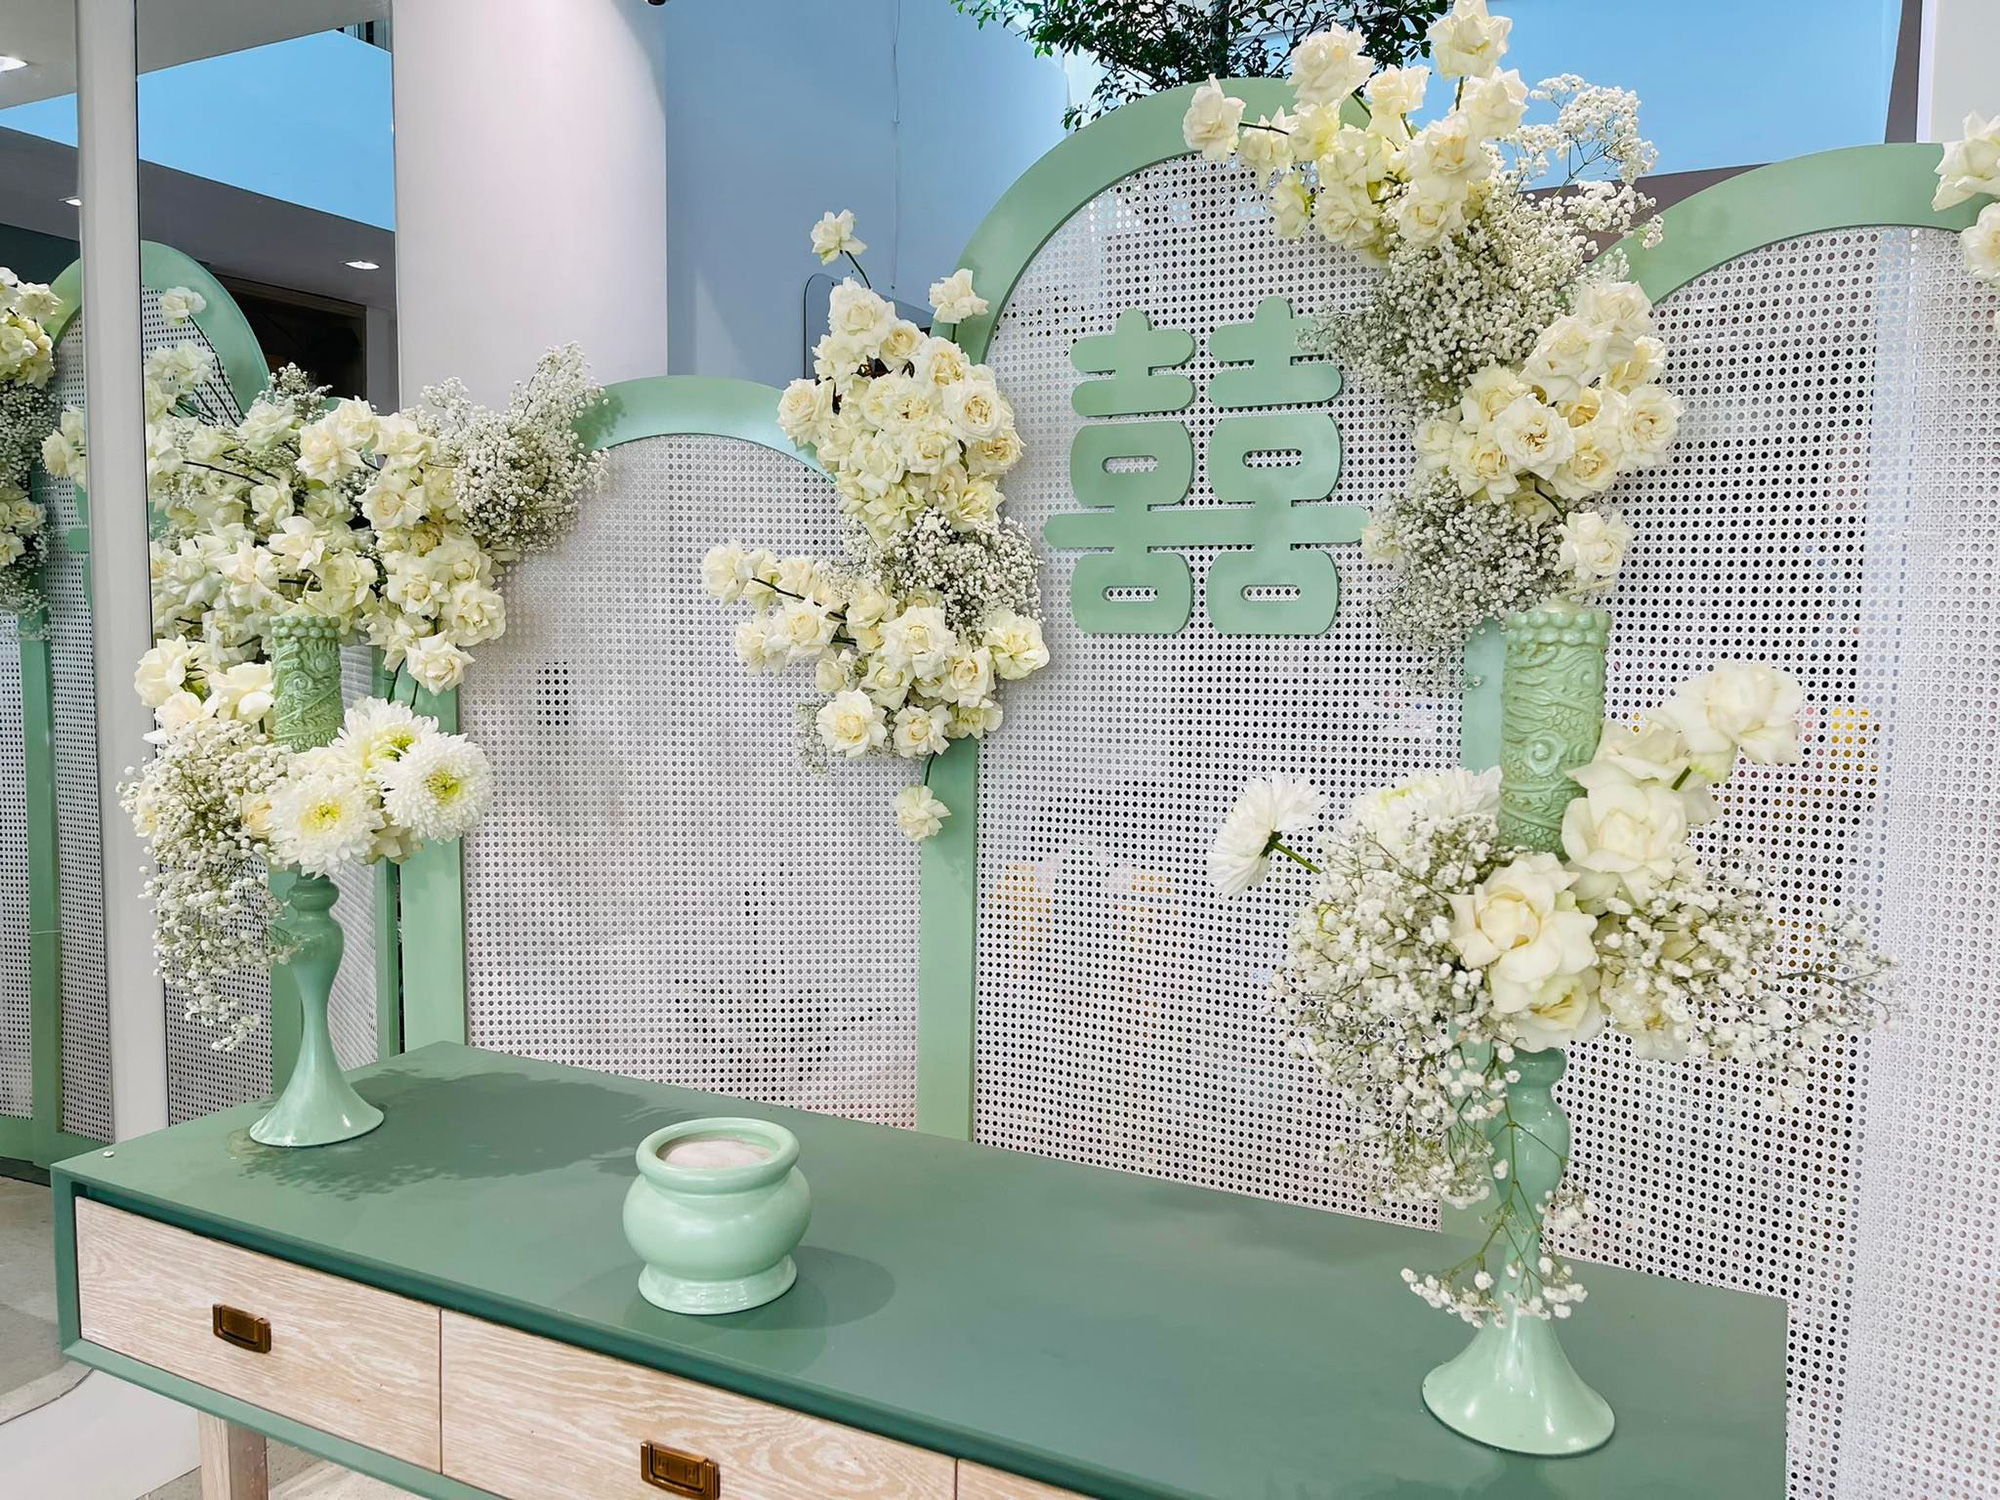 Đám cưới Phương Trinh Jolie - Lý Bình: Nhà riêng trang hoàng đầy hoa tươi, tông màu cưới xanh mint quá xinh - Ảnh 6.